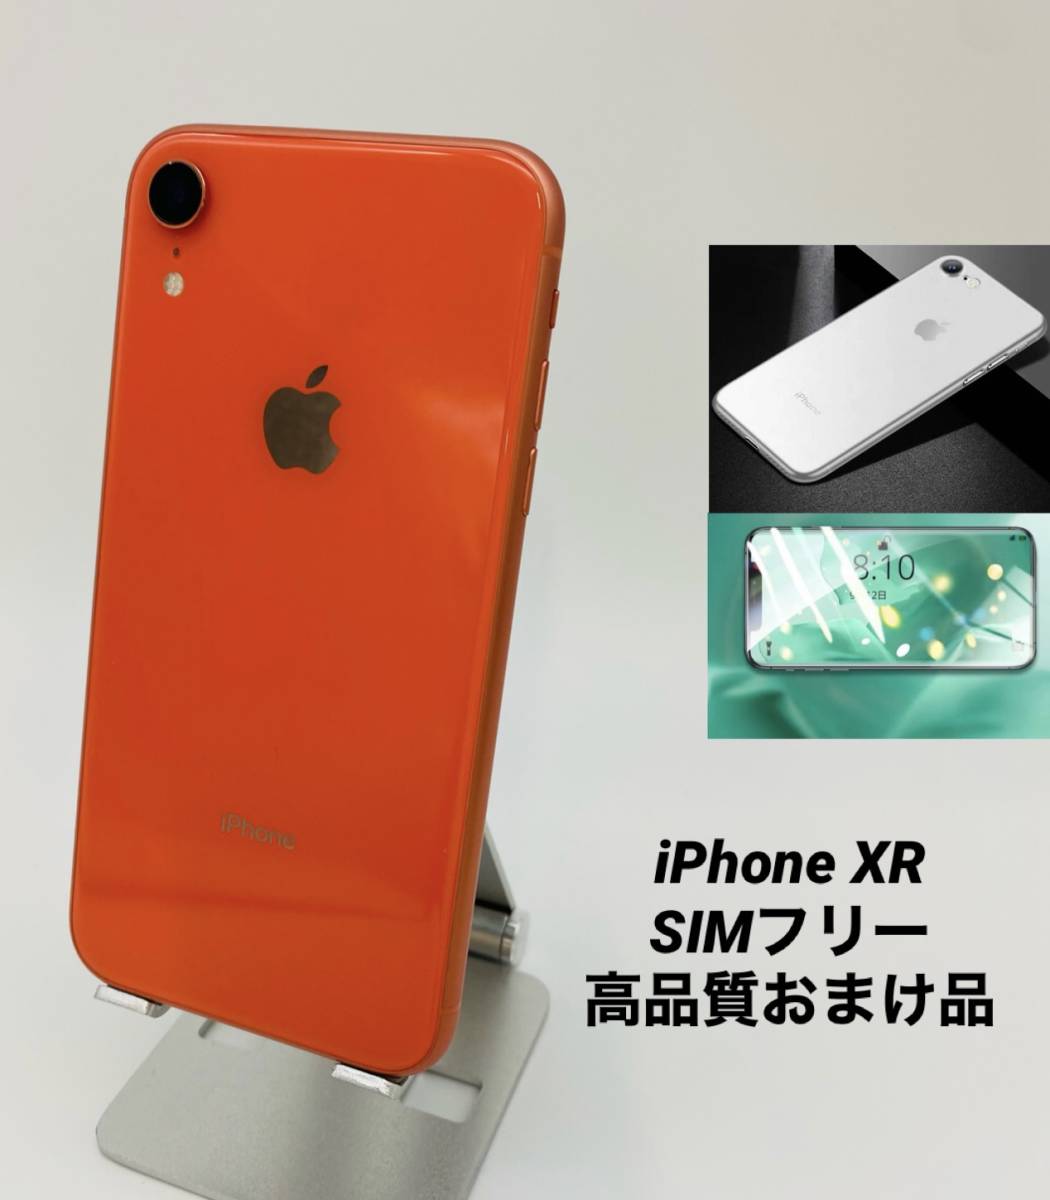 iPhoneXR 64GB コーラル/新品バッテリー100%/シムフリー/おまけ多数 XR-010